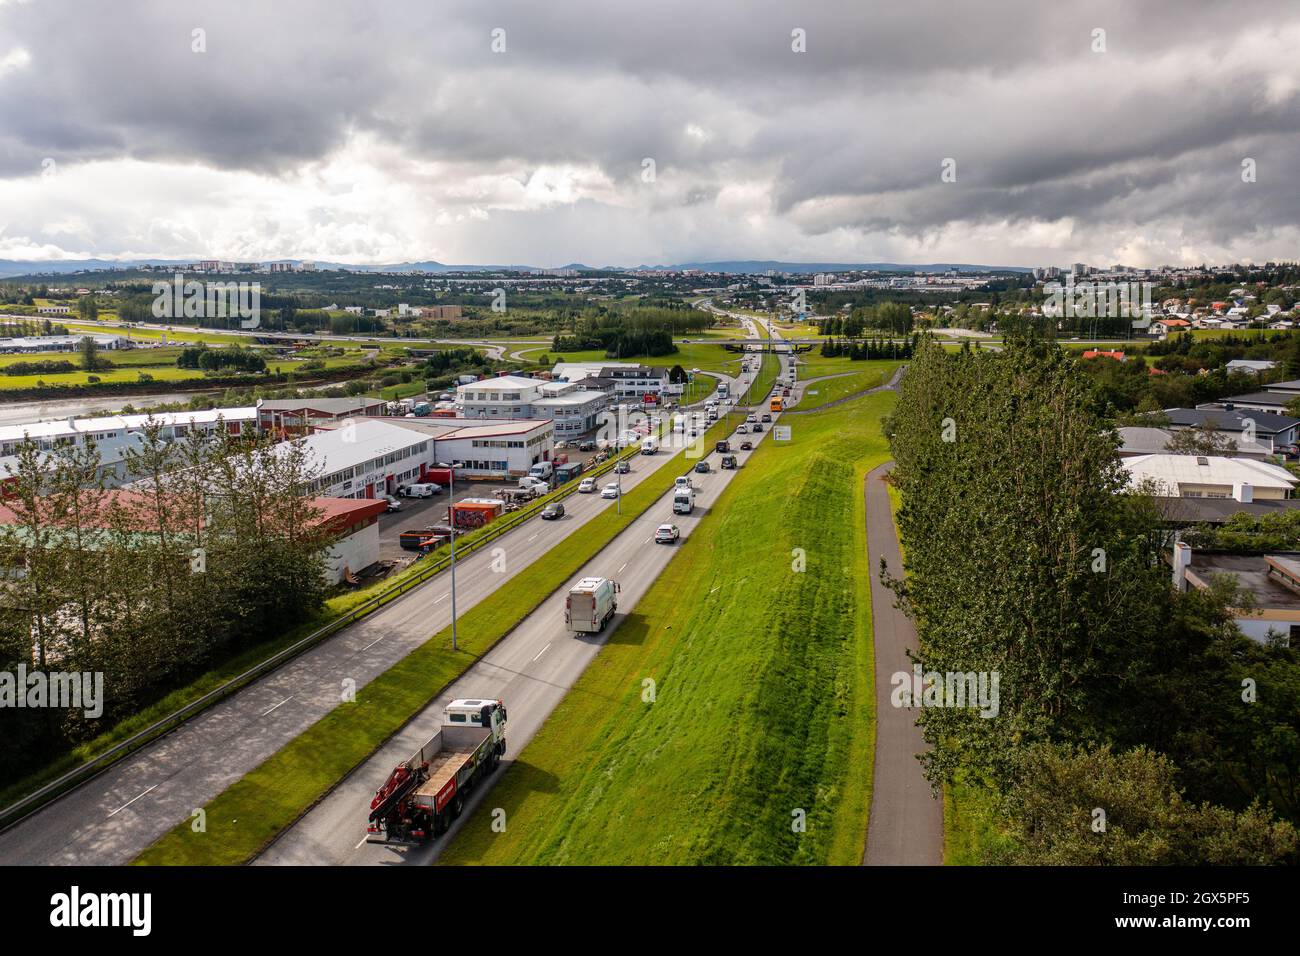 Vue de drone des camions et des voitures roulant sur la route asphaltée près des arbres verts et des bâtiments à travers la ville le jour d'été couvert. Banque D'Images